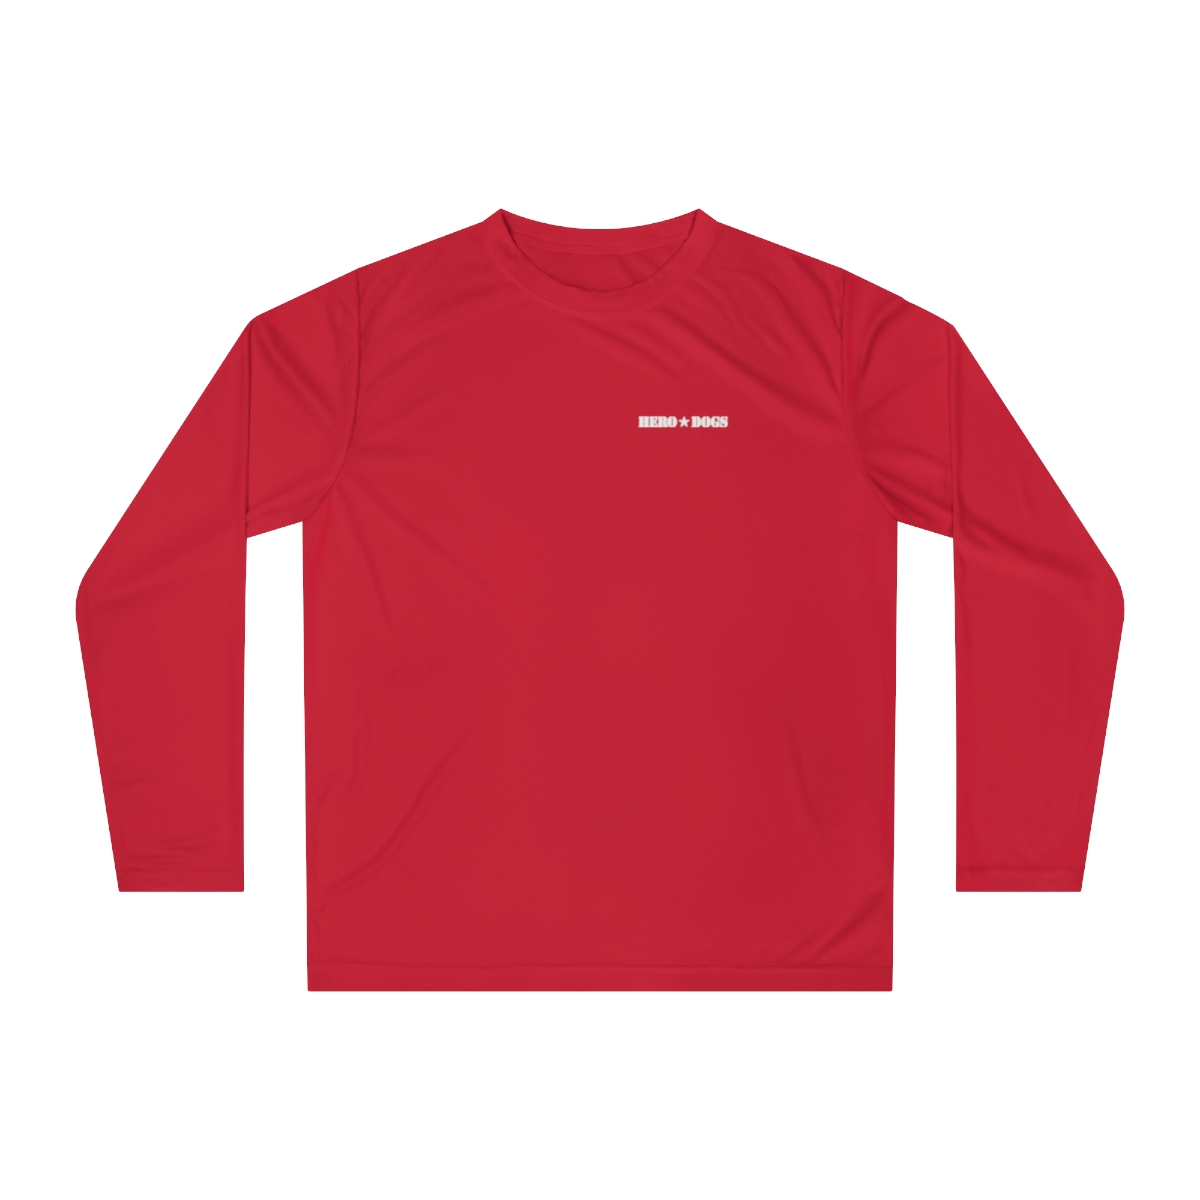 Unisex Performance Long Sleeve Shirt product thumbnail image